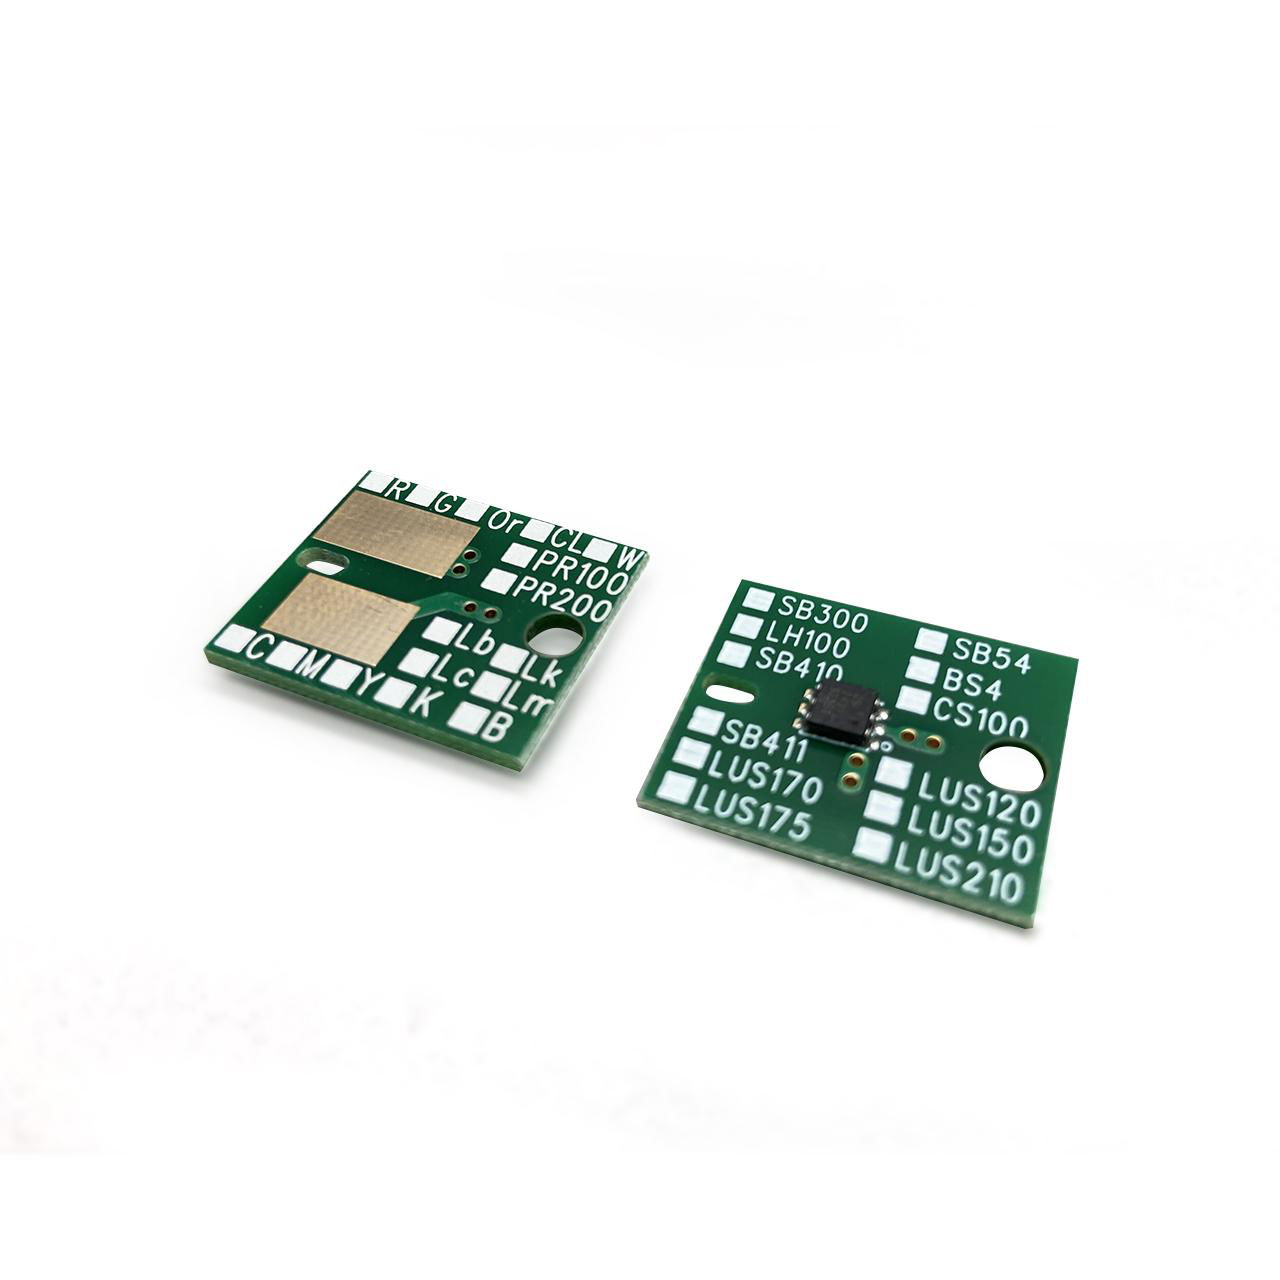 SB54 一次性芯片 for Mimaki TS30-1300 JV300 JV150 CJV300 CJV150 3